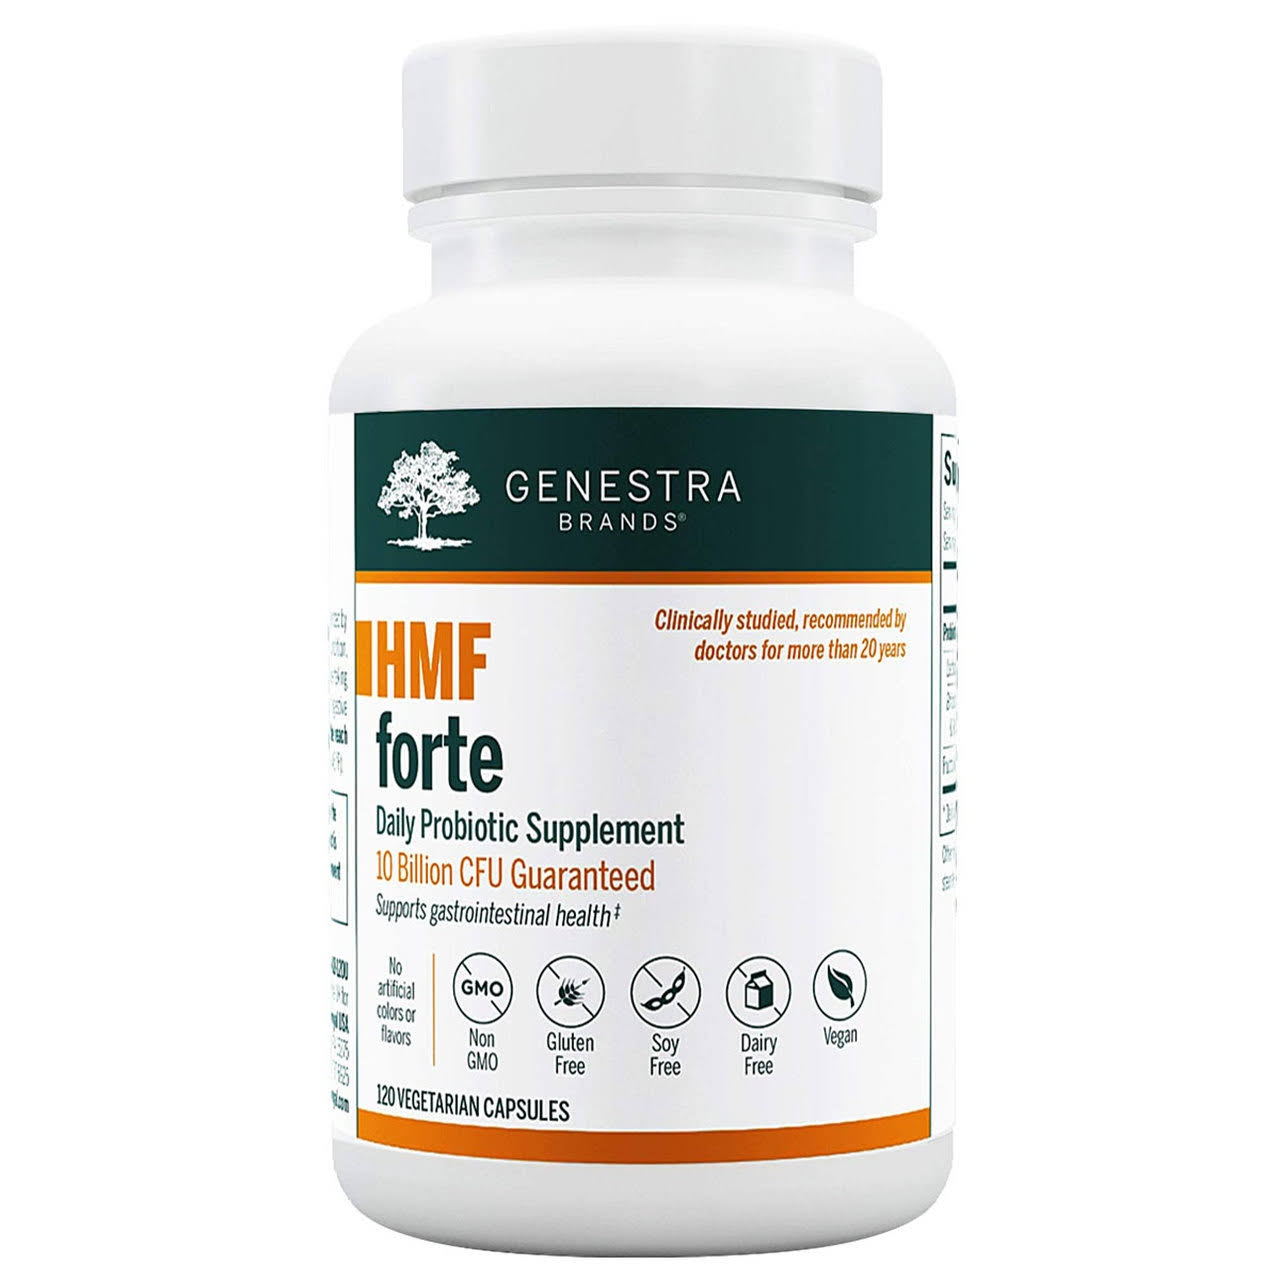 Genestra Brands HMF Forte Dietary Supplement - 120ct